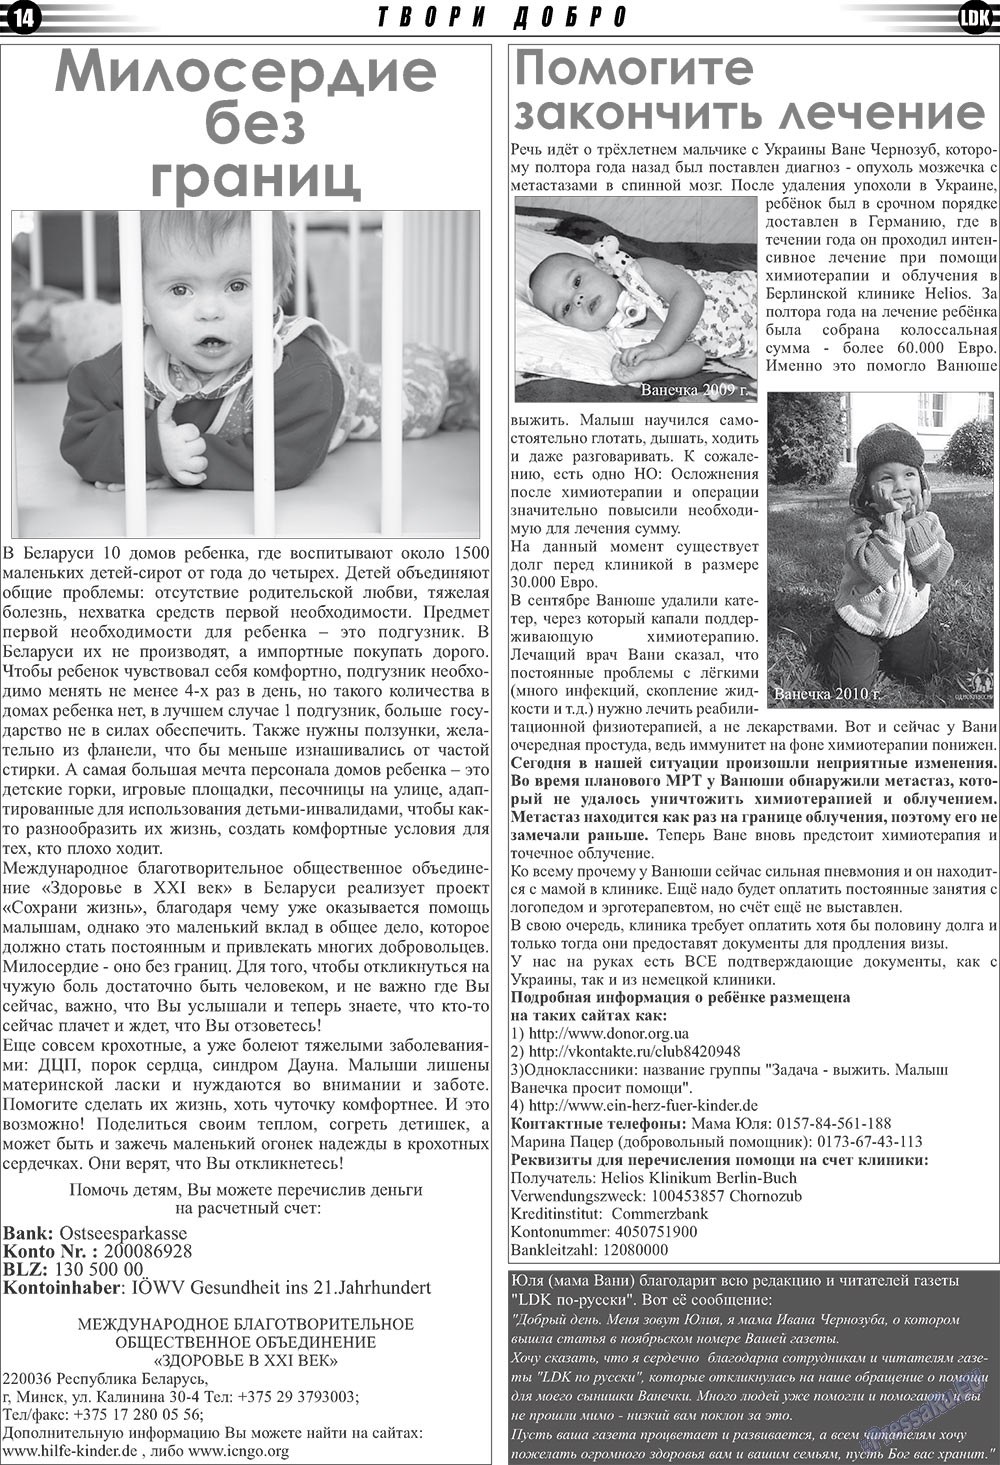 LDK по-русски (газета). 2010 год, номер 12, стр. 14